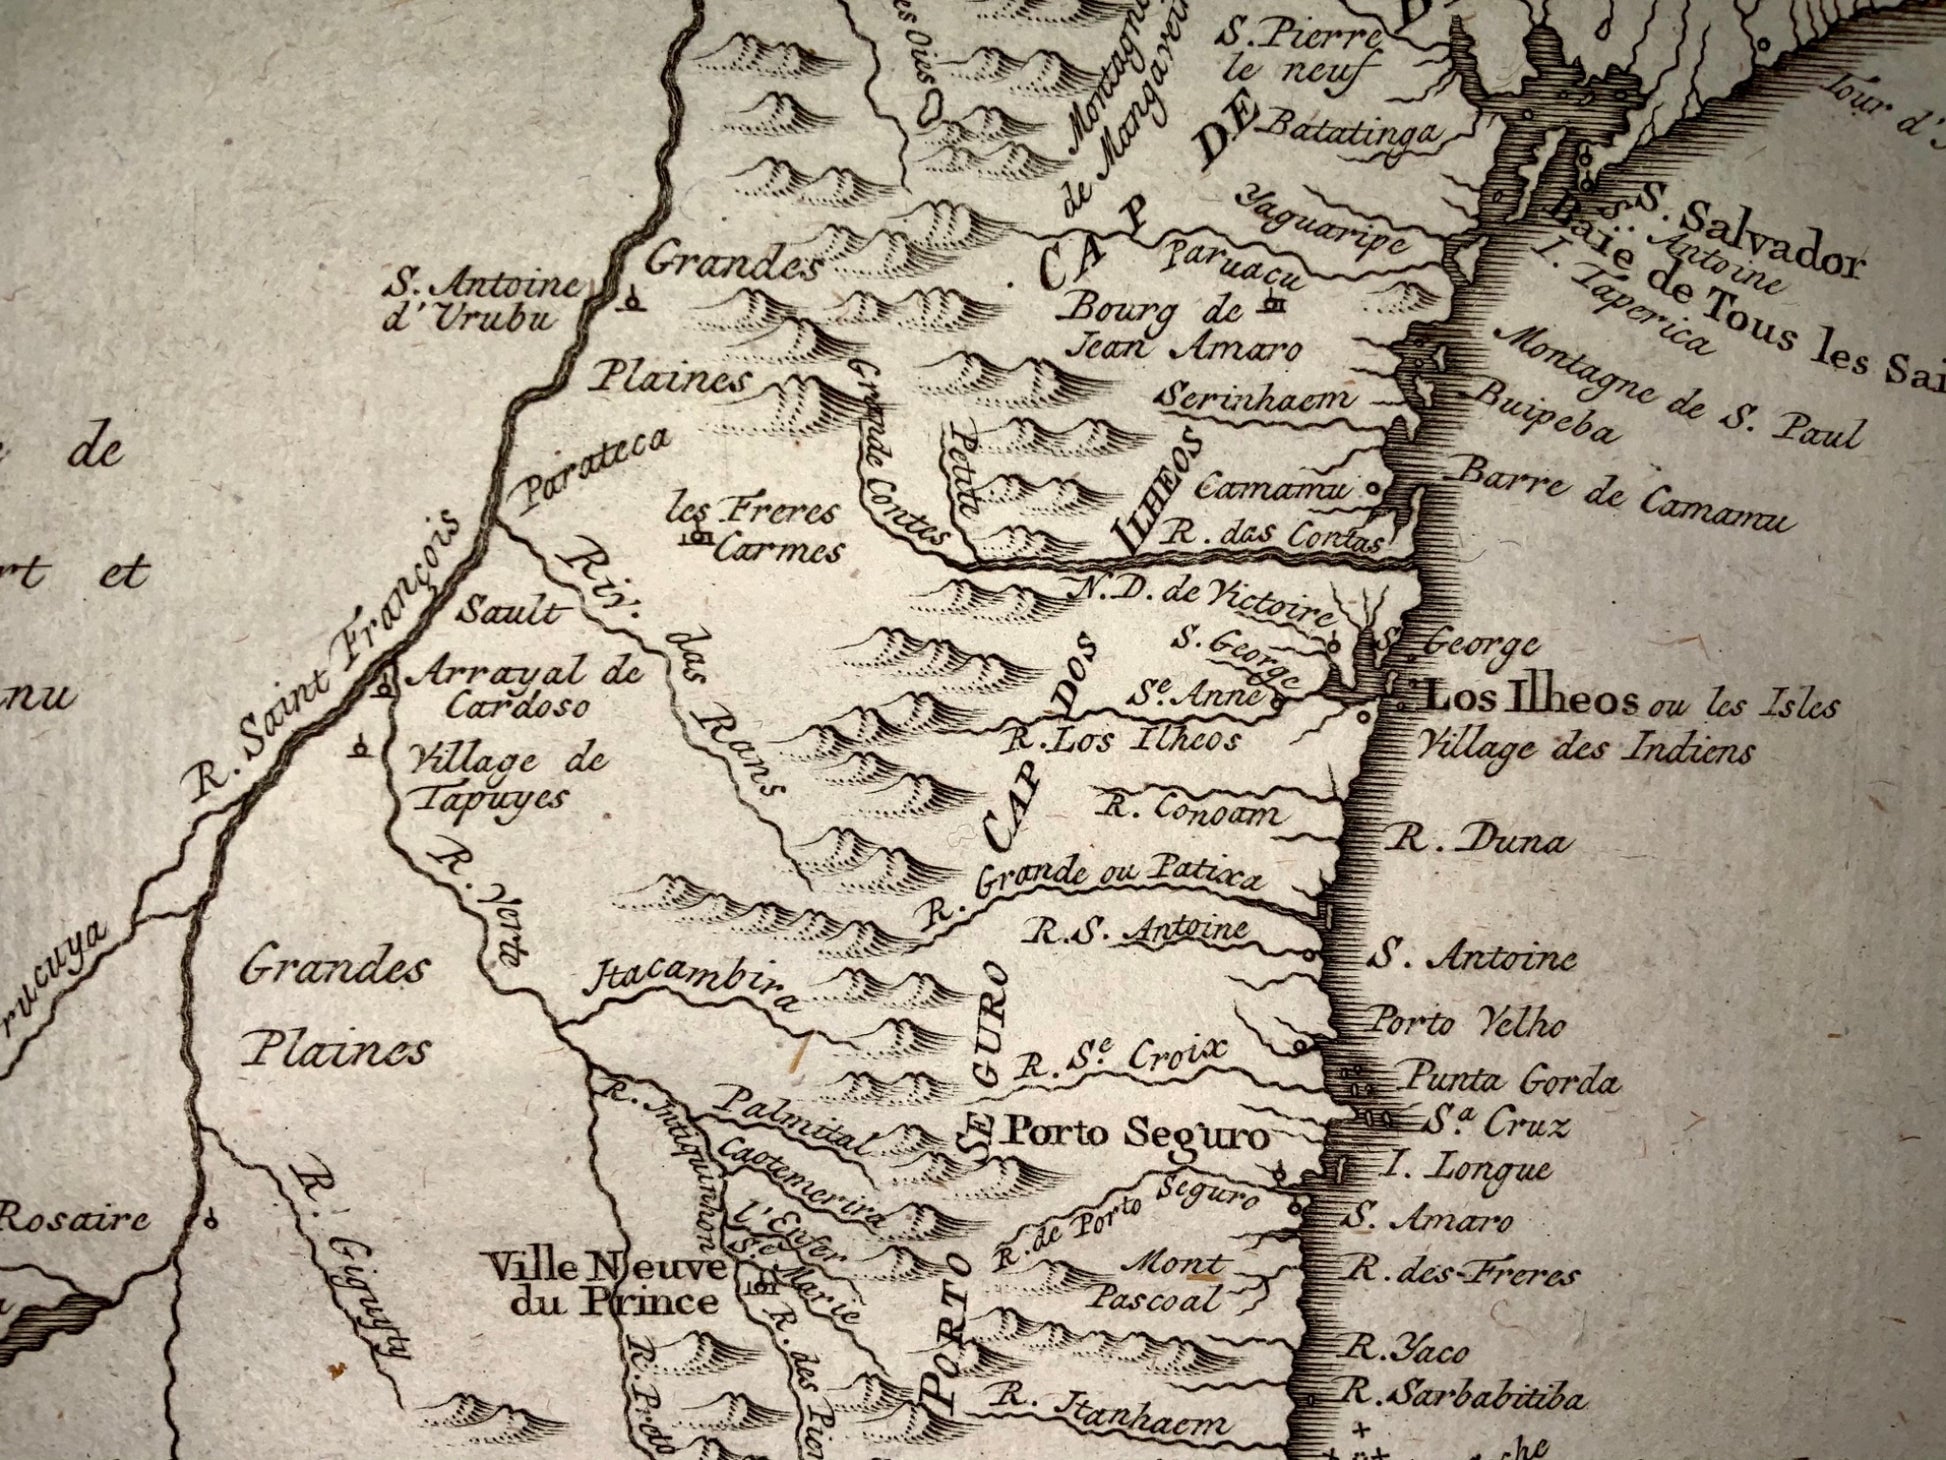 1757 Jacques BELLIN - Coast of Brazil ‘Baie de Tous les Saints’ South America - Map Travel